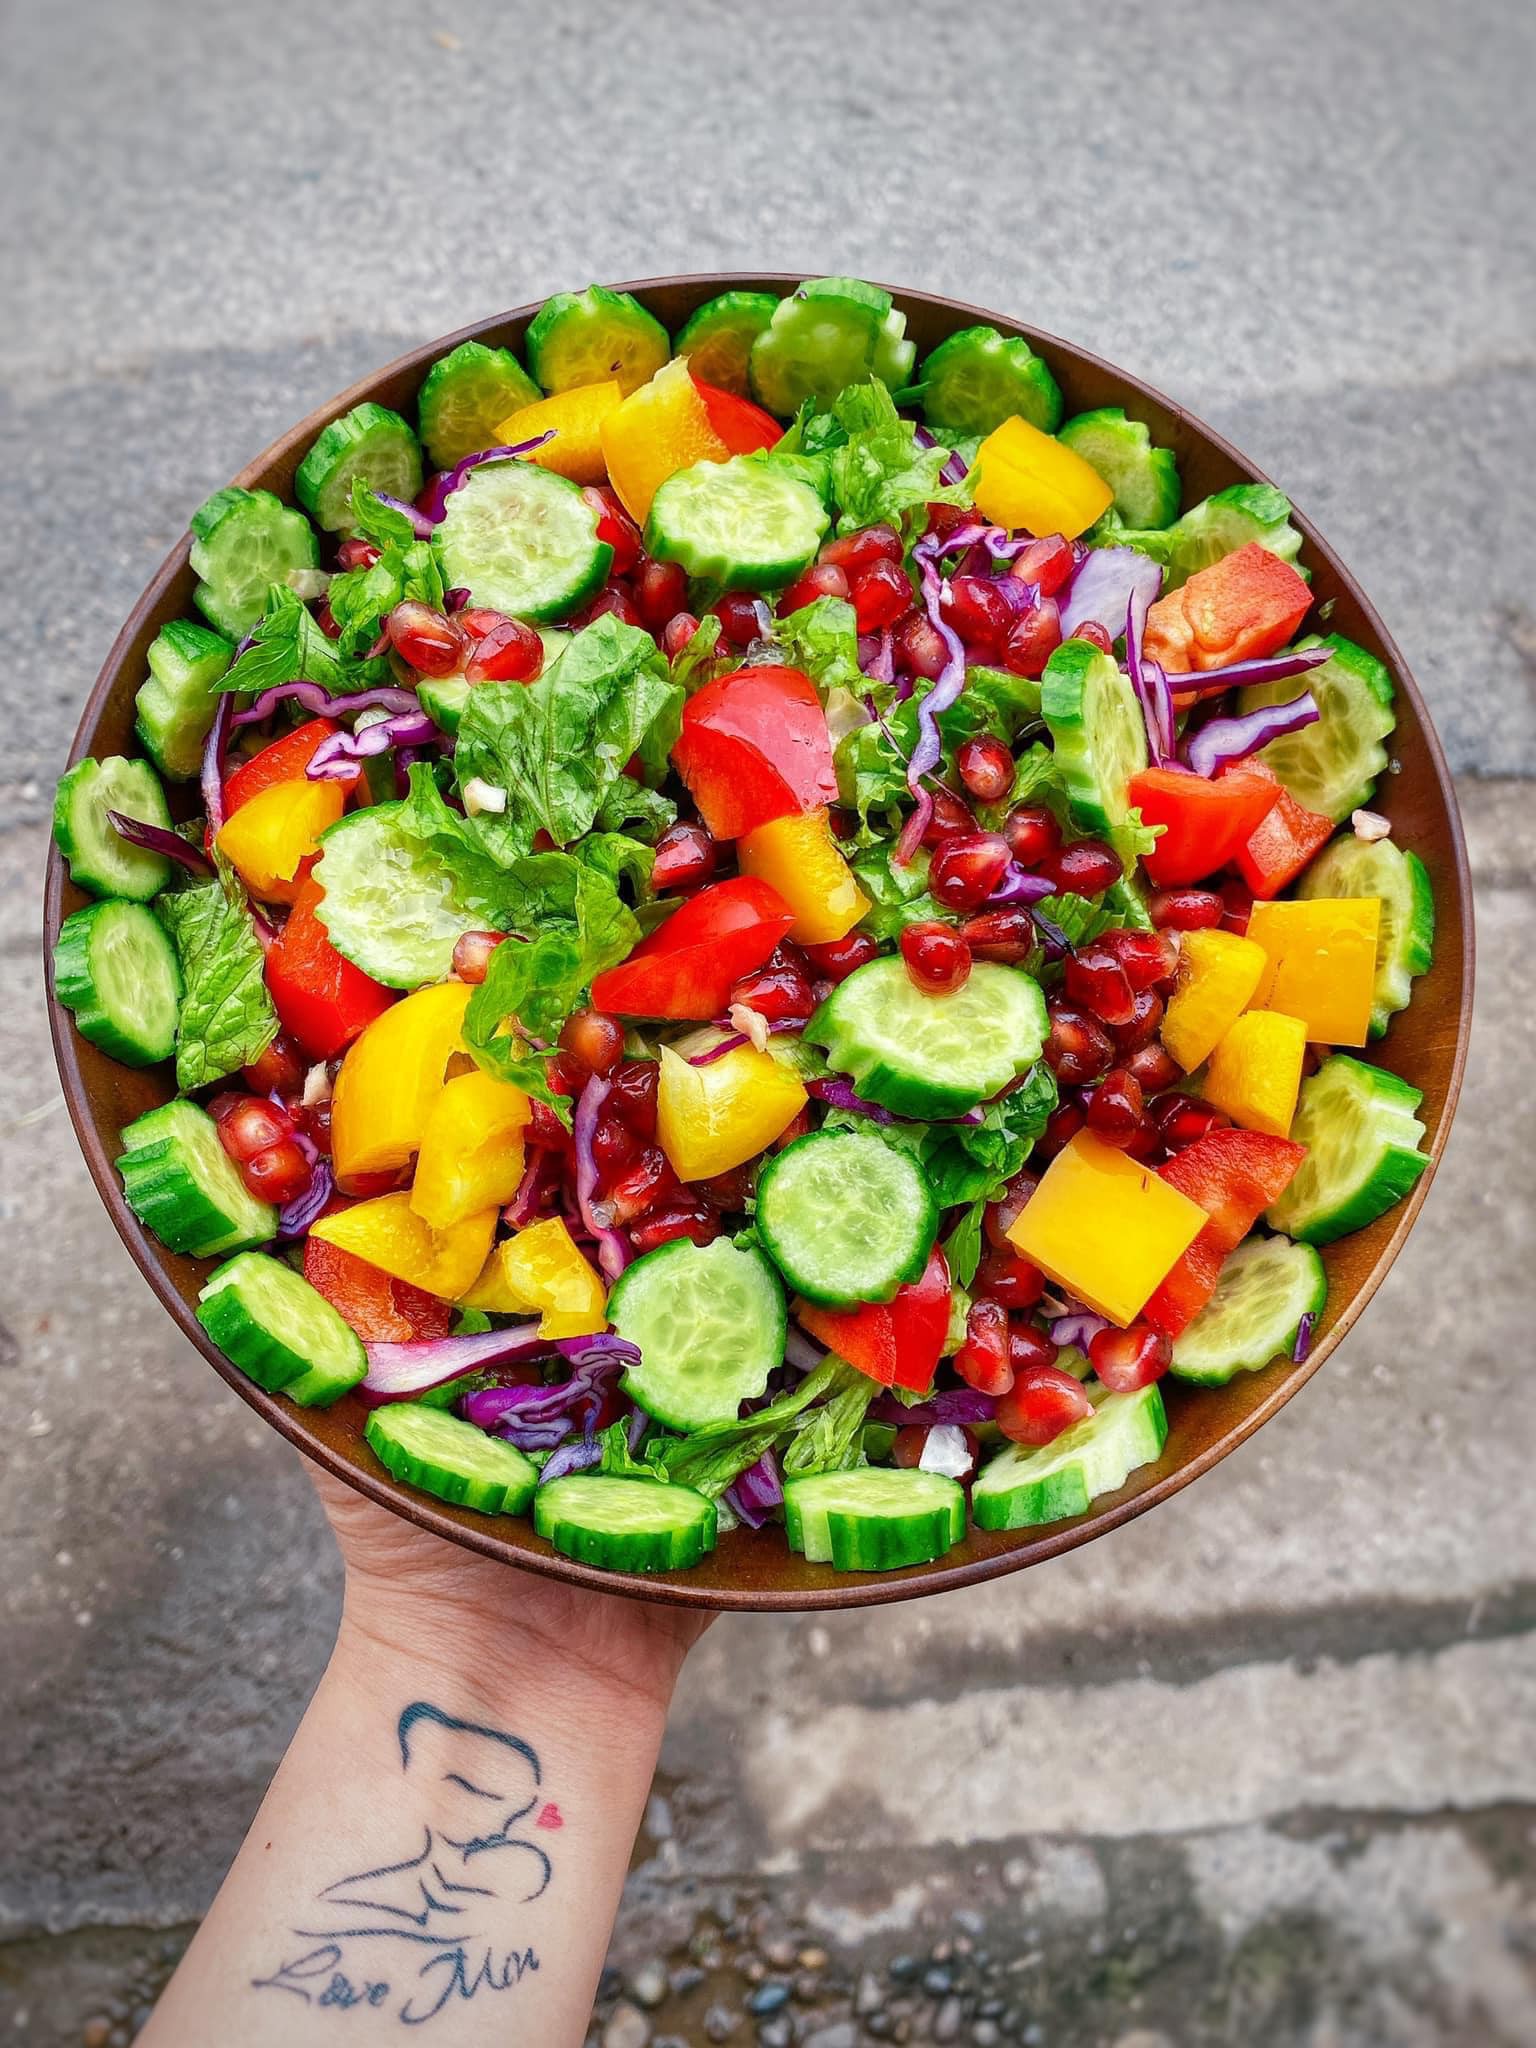 Hướng dẫn cách làm 10 món salad vừa ngon mà lại giảm cân và thanh lọc cơ thể